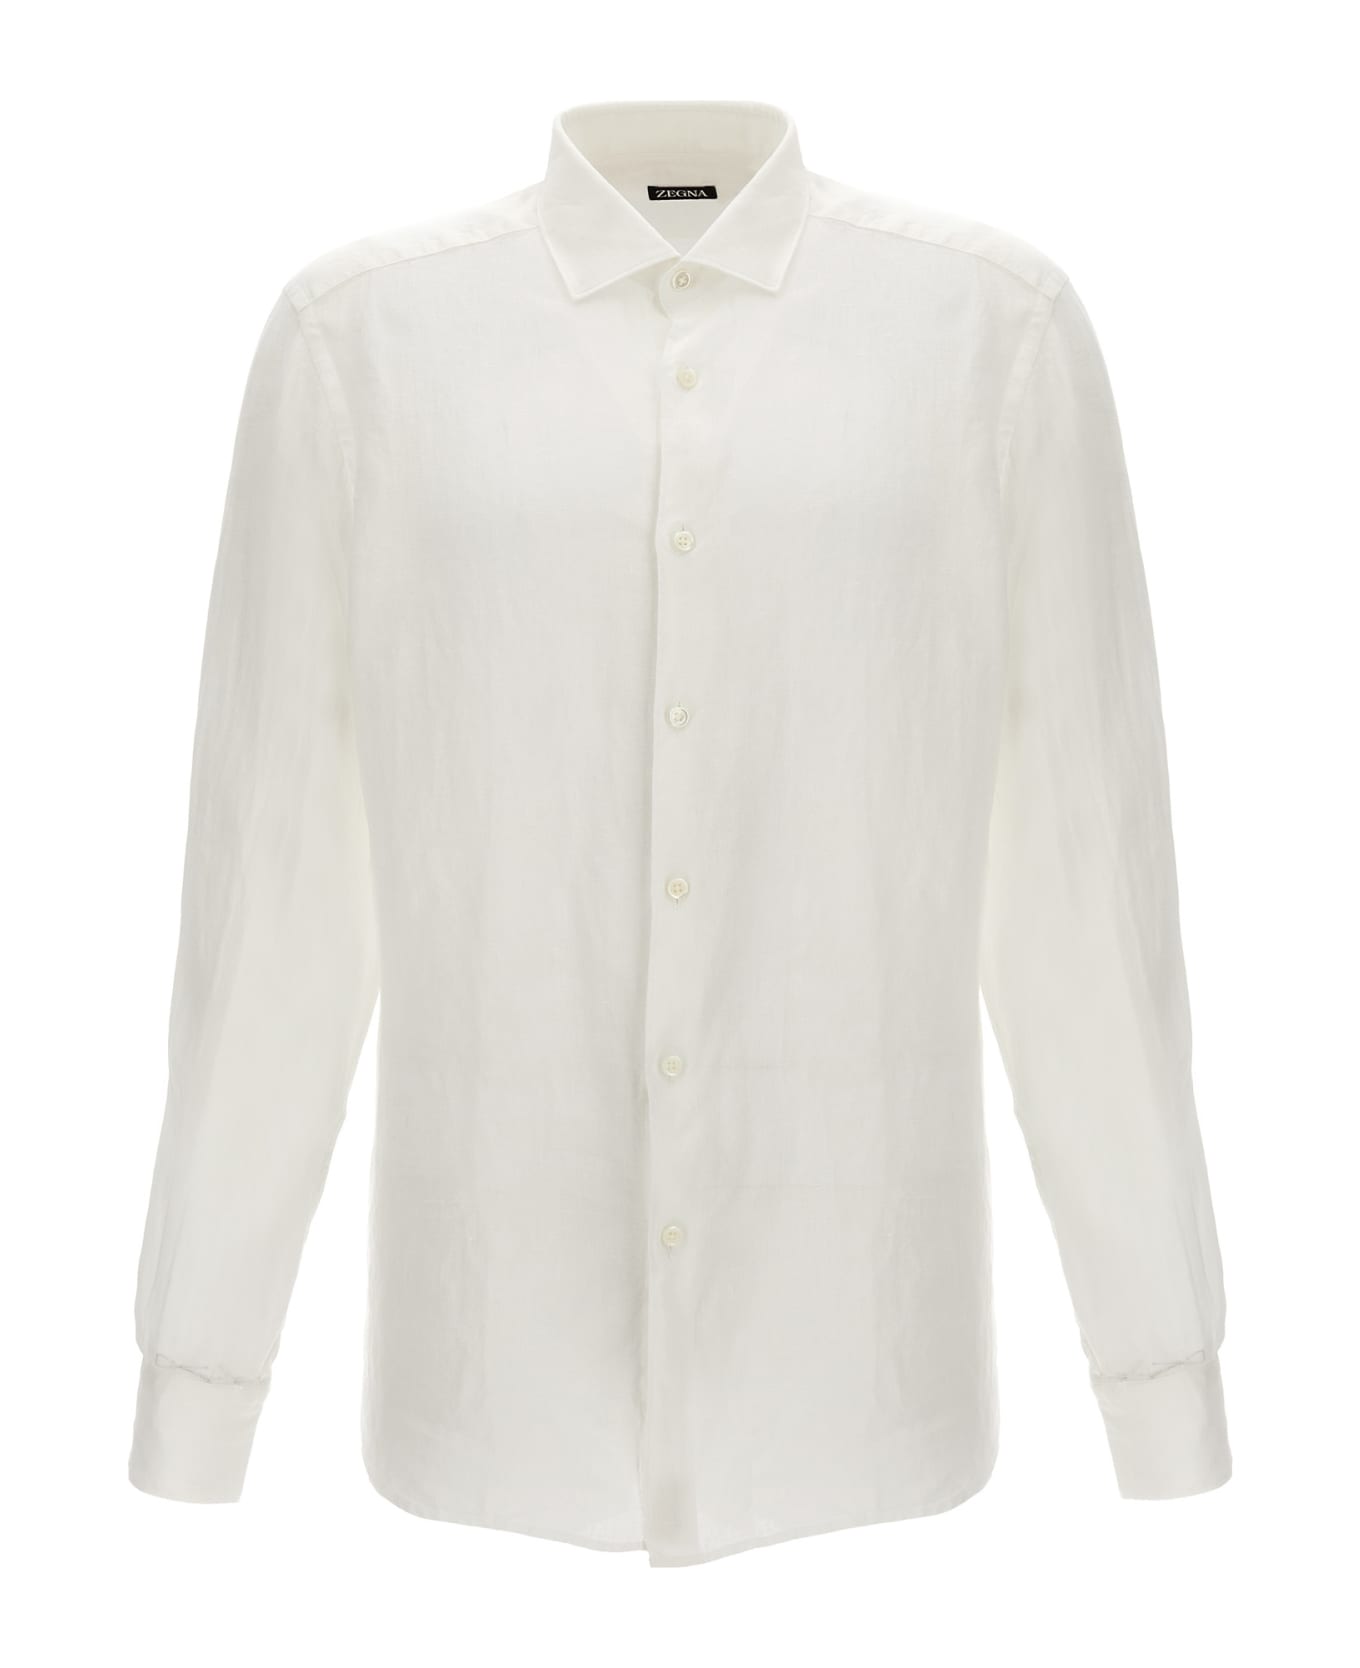 Zegna Linen Shirt - White シャツ